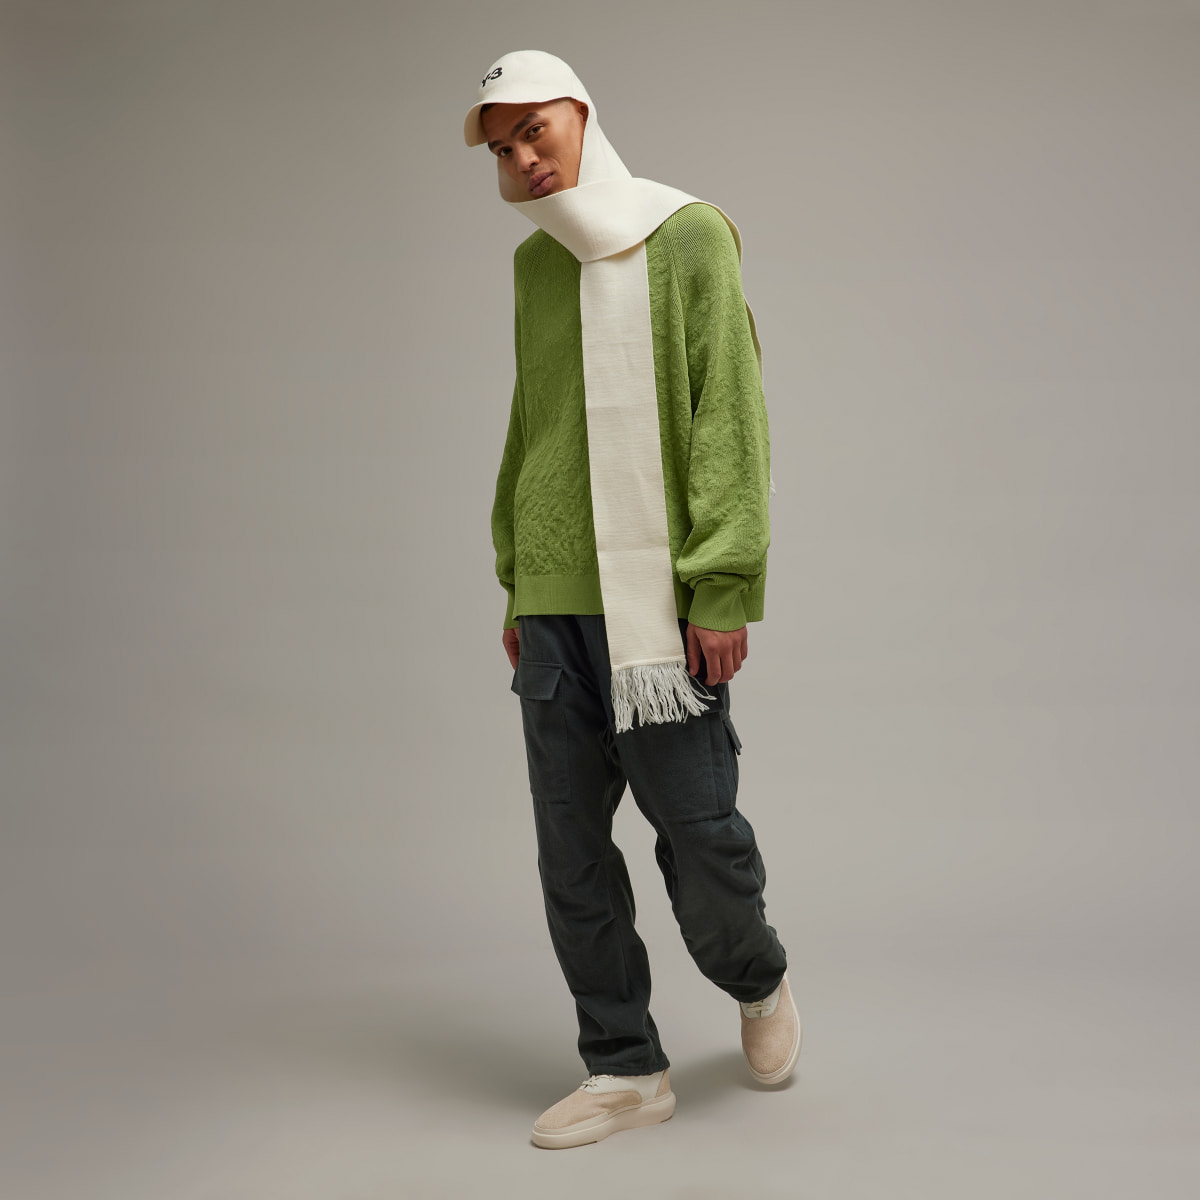 Adidas Y-3 Knit Crew Sweater. 4